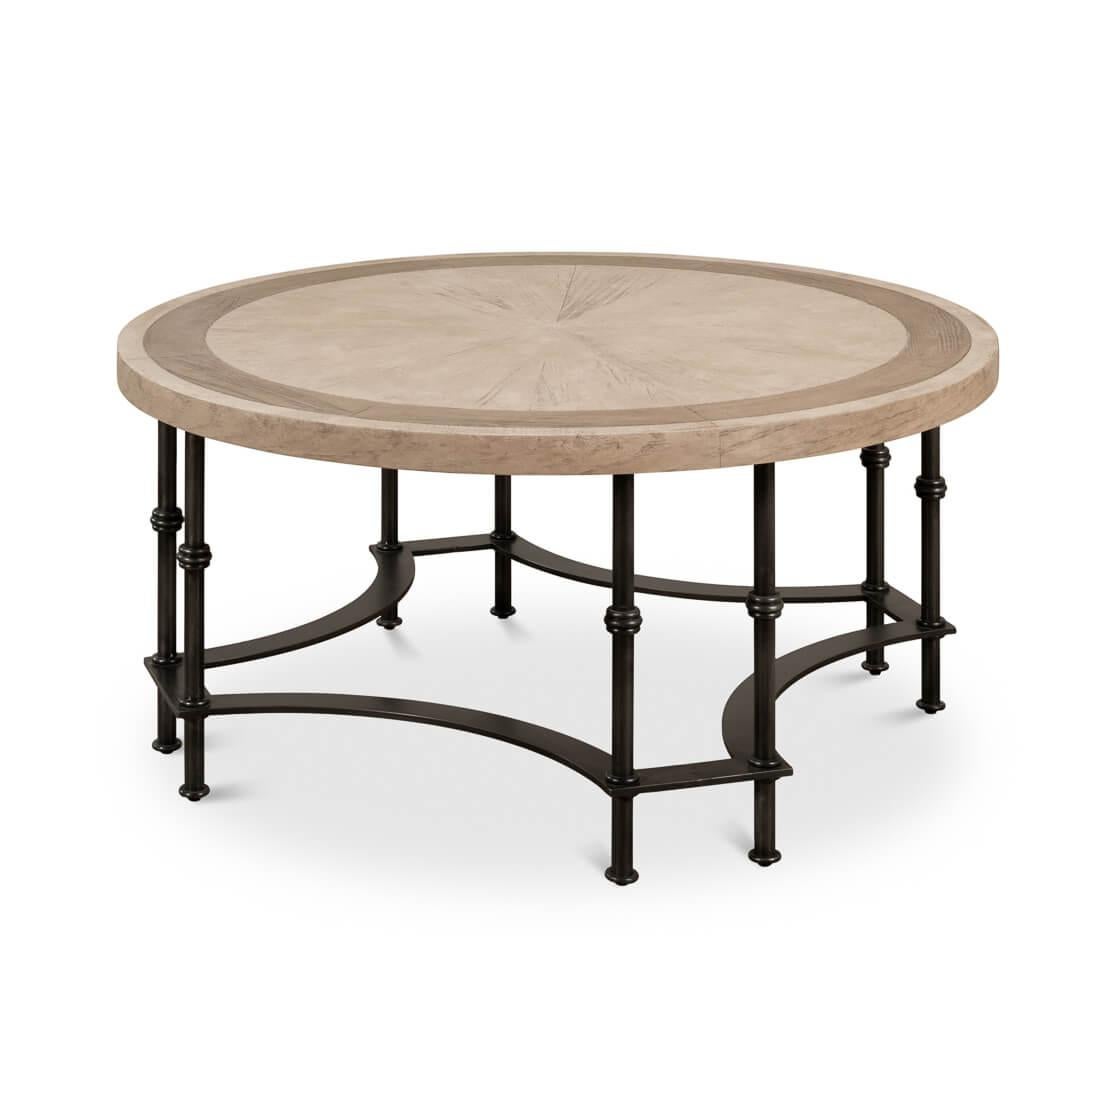 Die Basis dieses Tisches ist ein Meisterwerk der Metallverarbeitung, bei dem sowohl röhrenförmige als auch flache Elemente kunstvoll zu einem Sockel geschmiedet sind, der Kunstfertigkeit und geometrische Symmetrie verkörpert.

Die massive